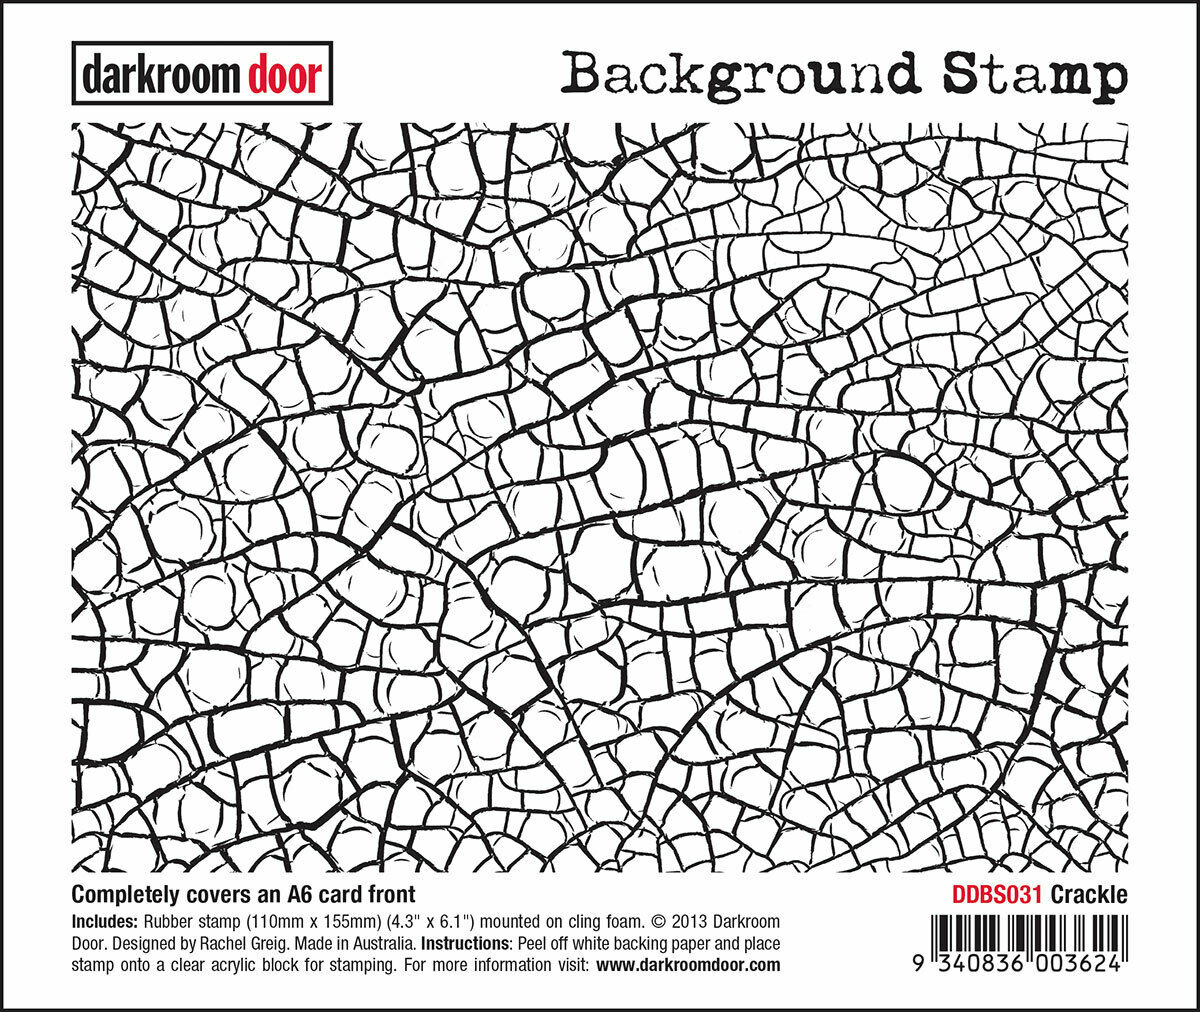 Darkroom Door Background Rubber Stamp Crackle 110mm x 155mm